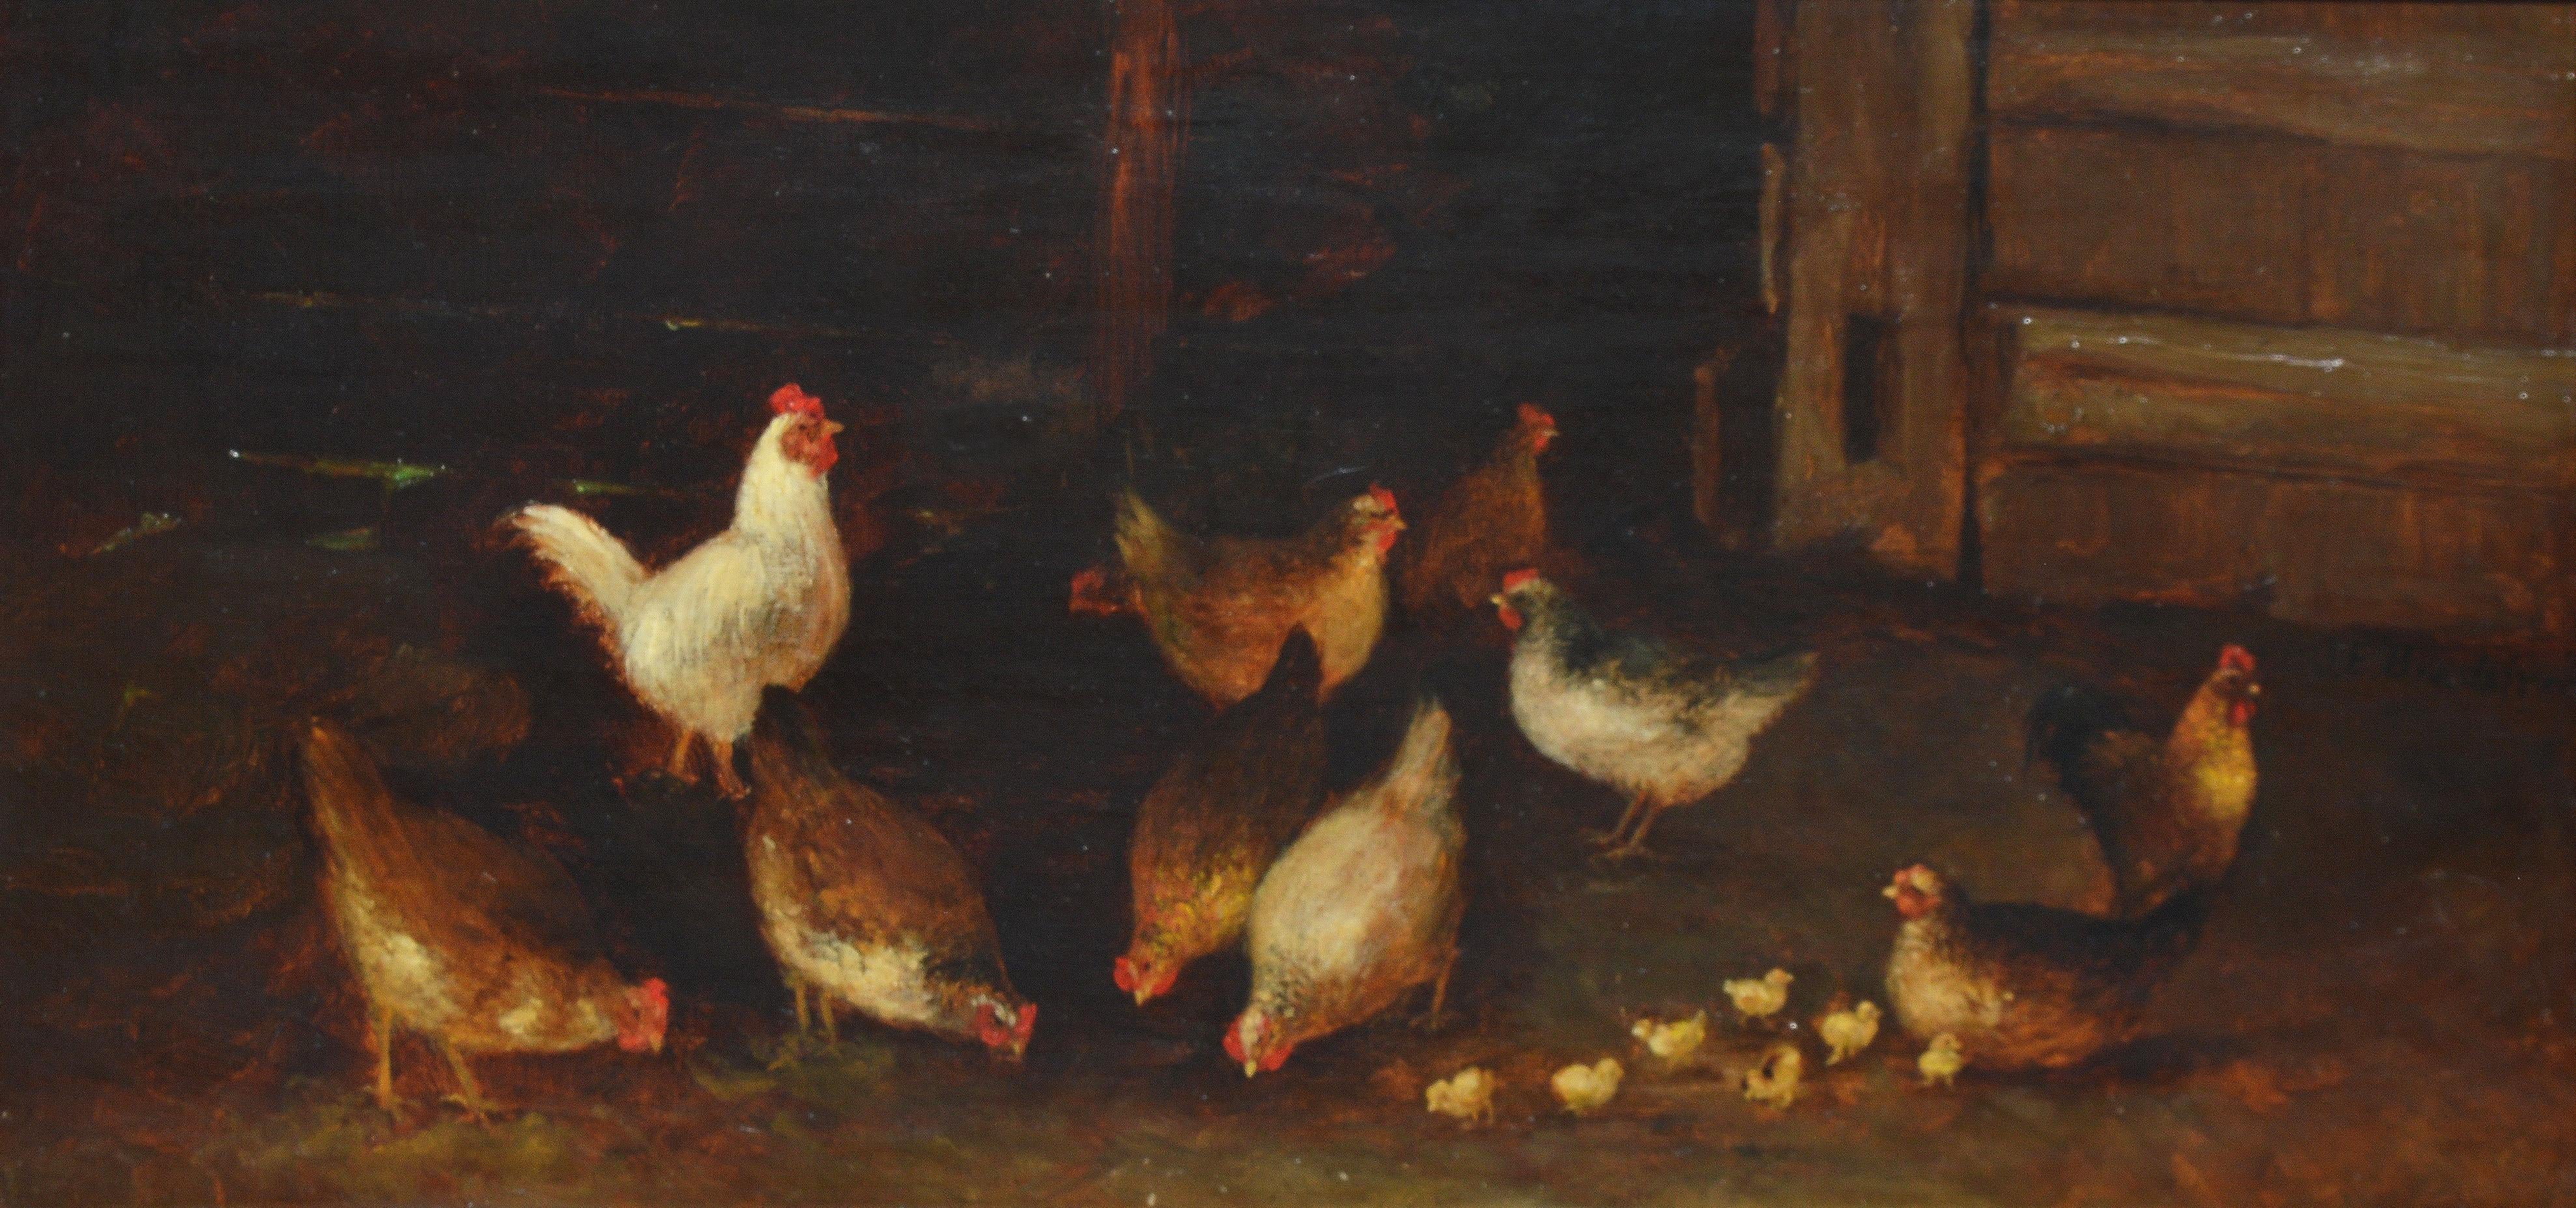 folk art chicken painting